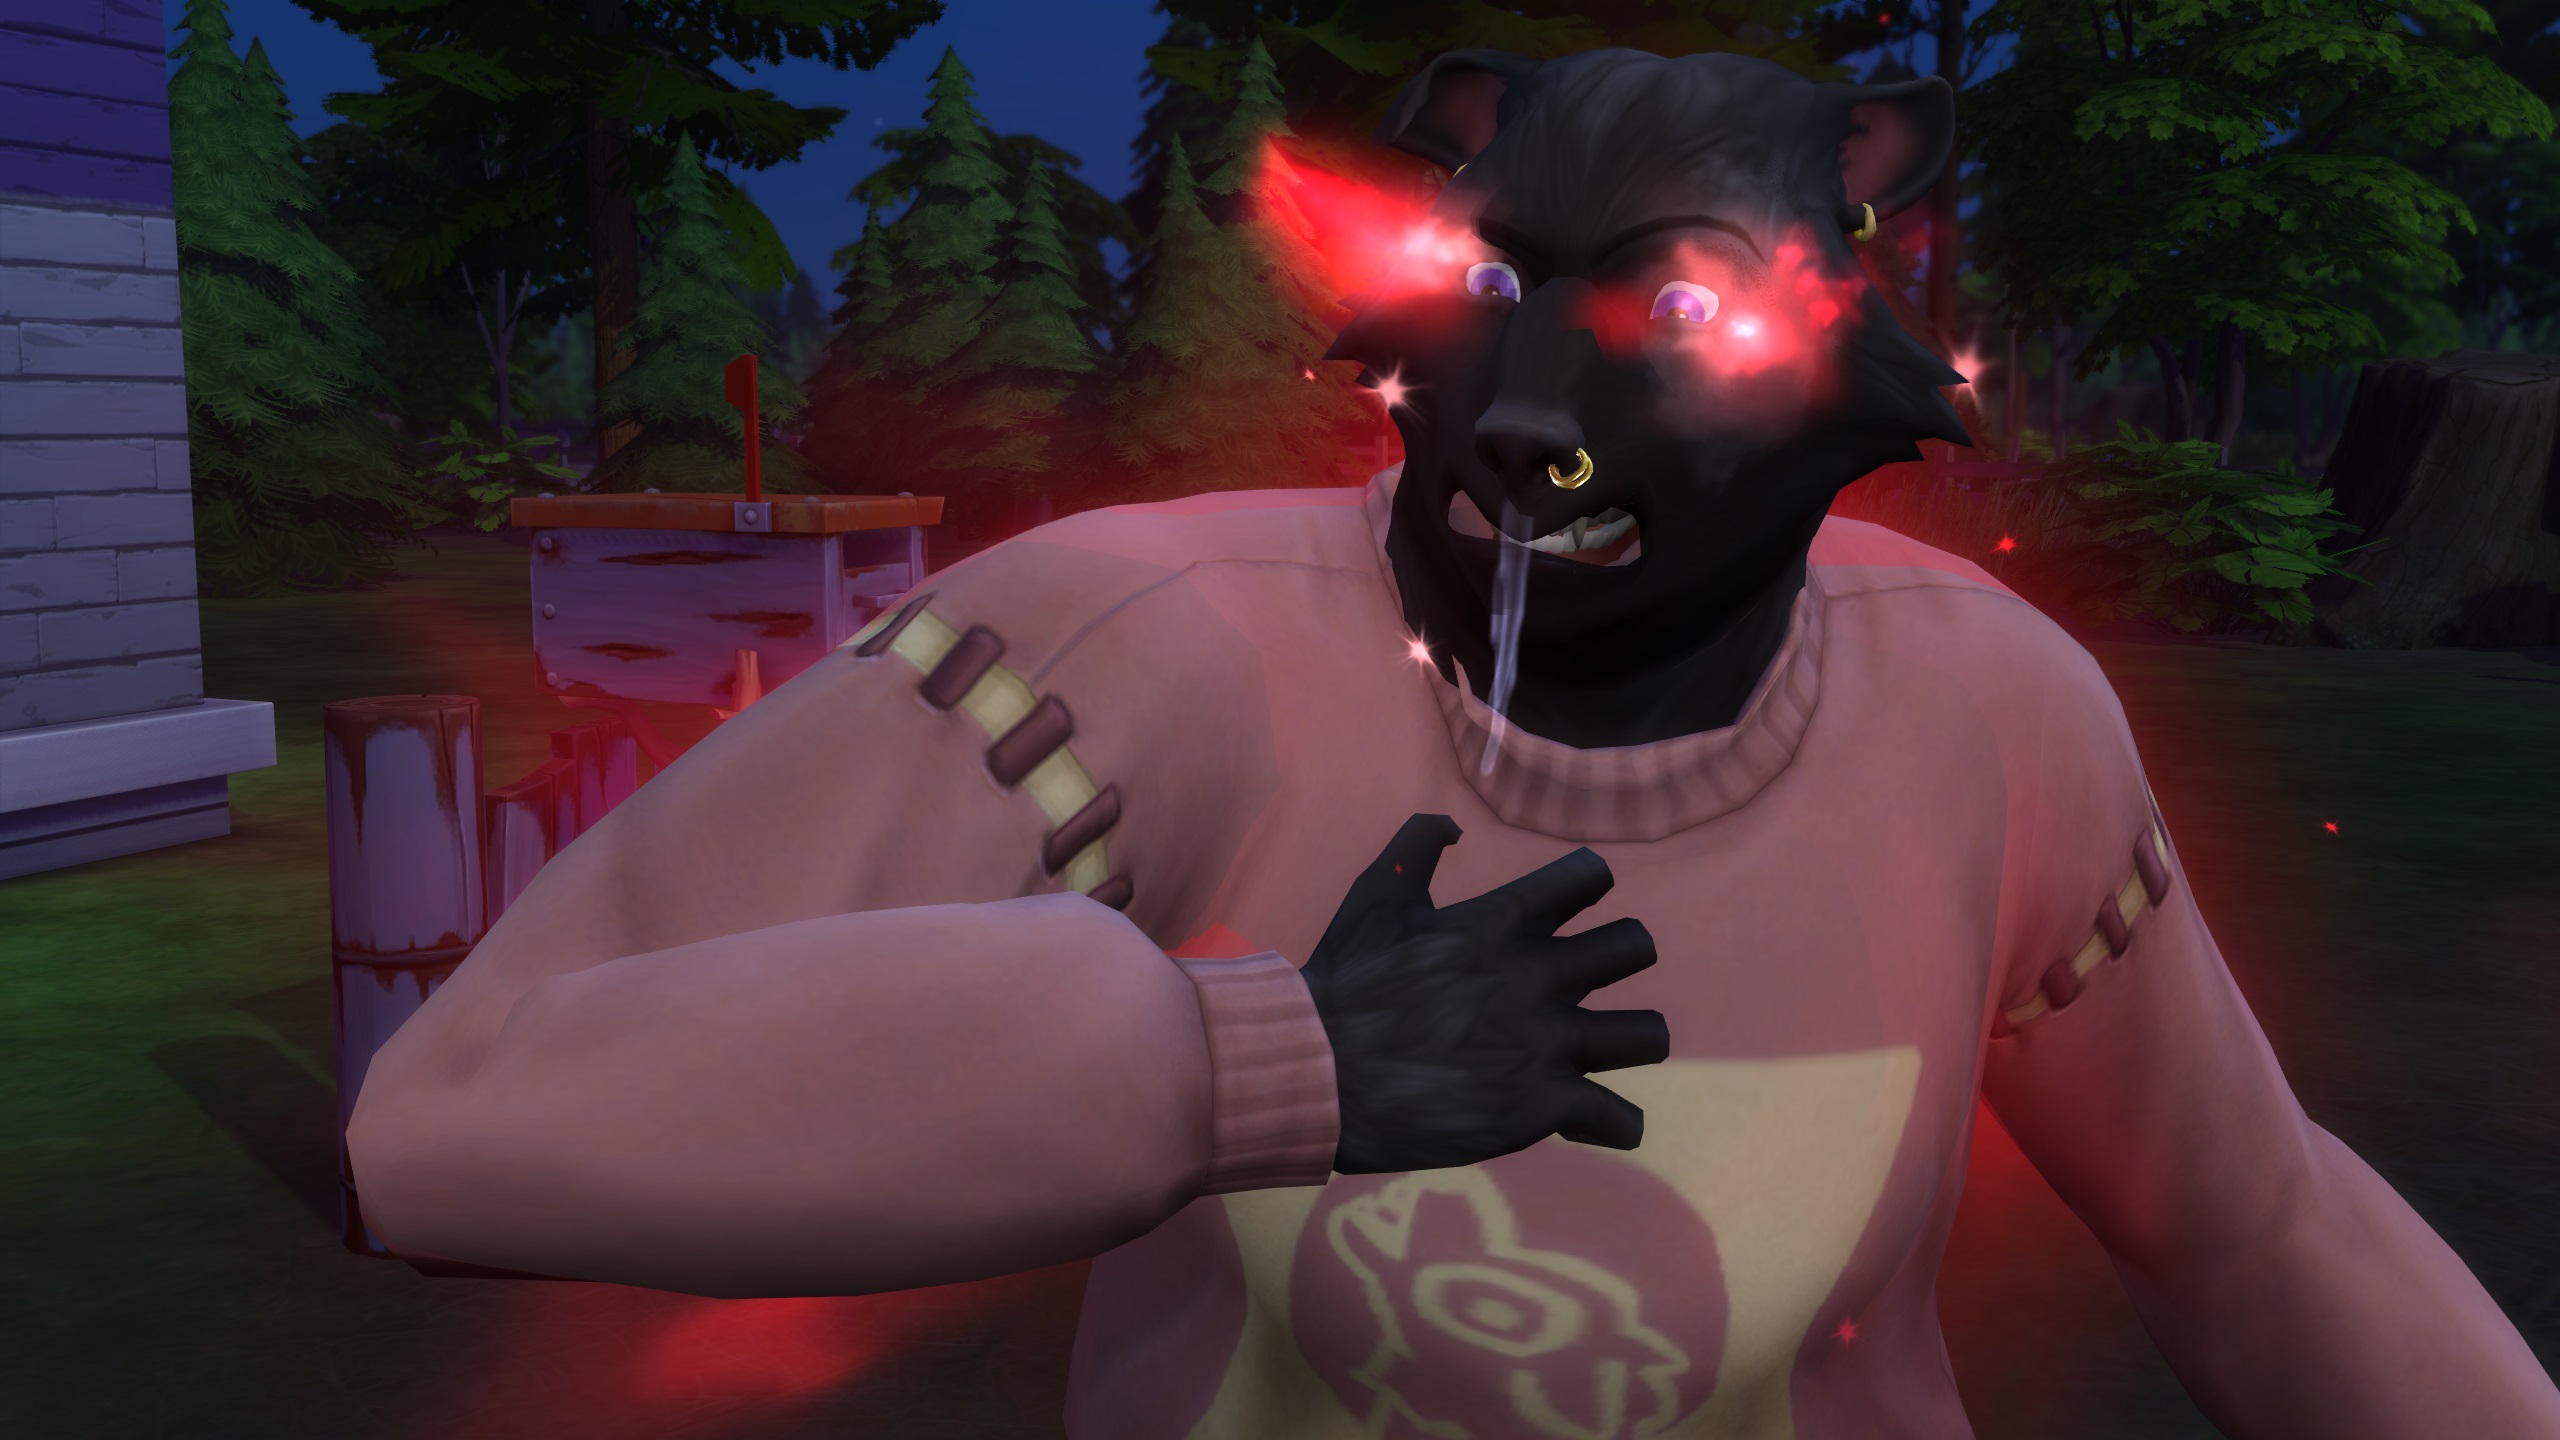 The Sims 4 Werewolves - Ihmissusisimillä, jolla on musta turkki, on vihaiset hehkuvat punaiset silmät, jotka ovat täynnä raivoa ja kuolaa yllään vaaleanpunainen pusero.